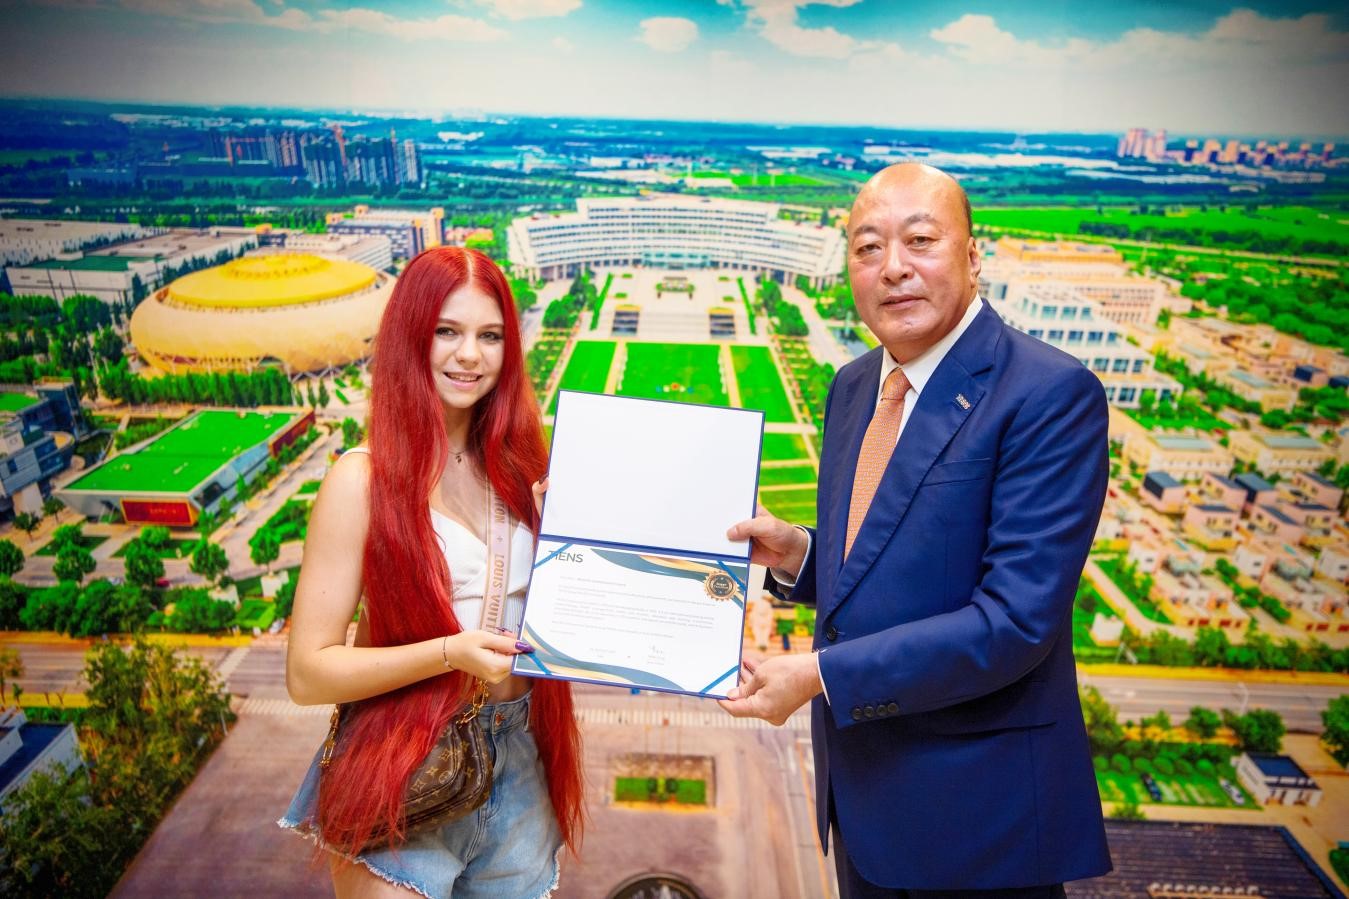 Александра Трусова  посетила индустриальный парк компании Tiens Group  в Китае - фото 2